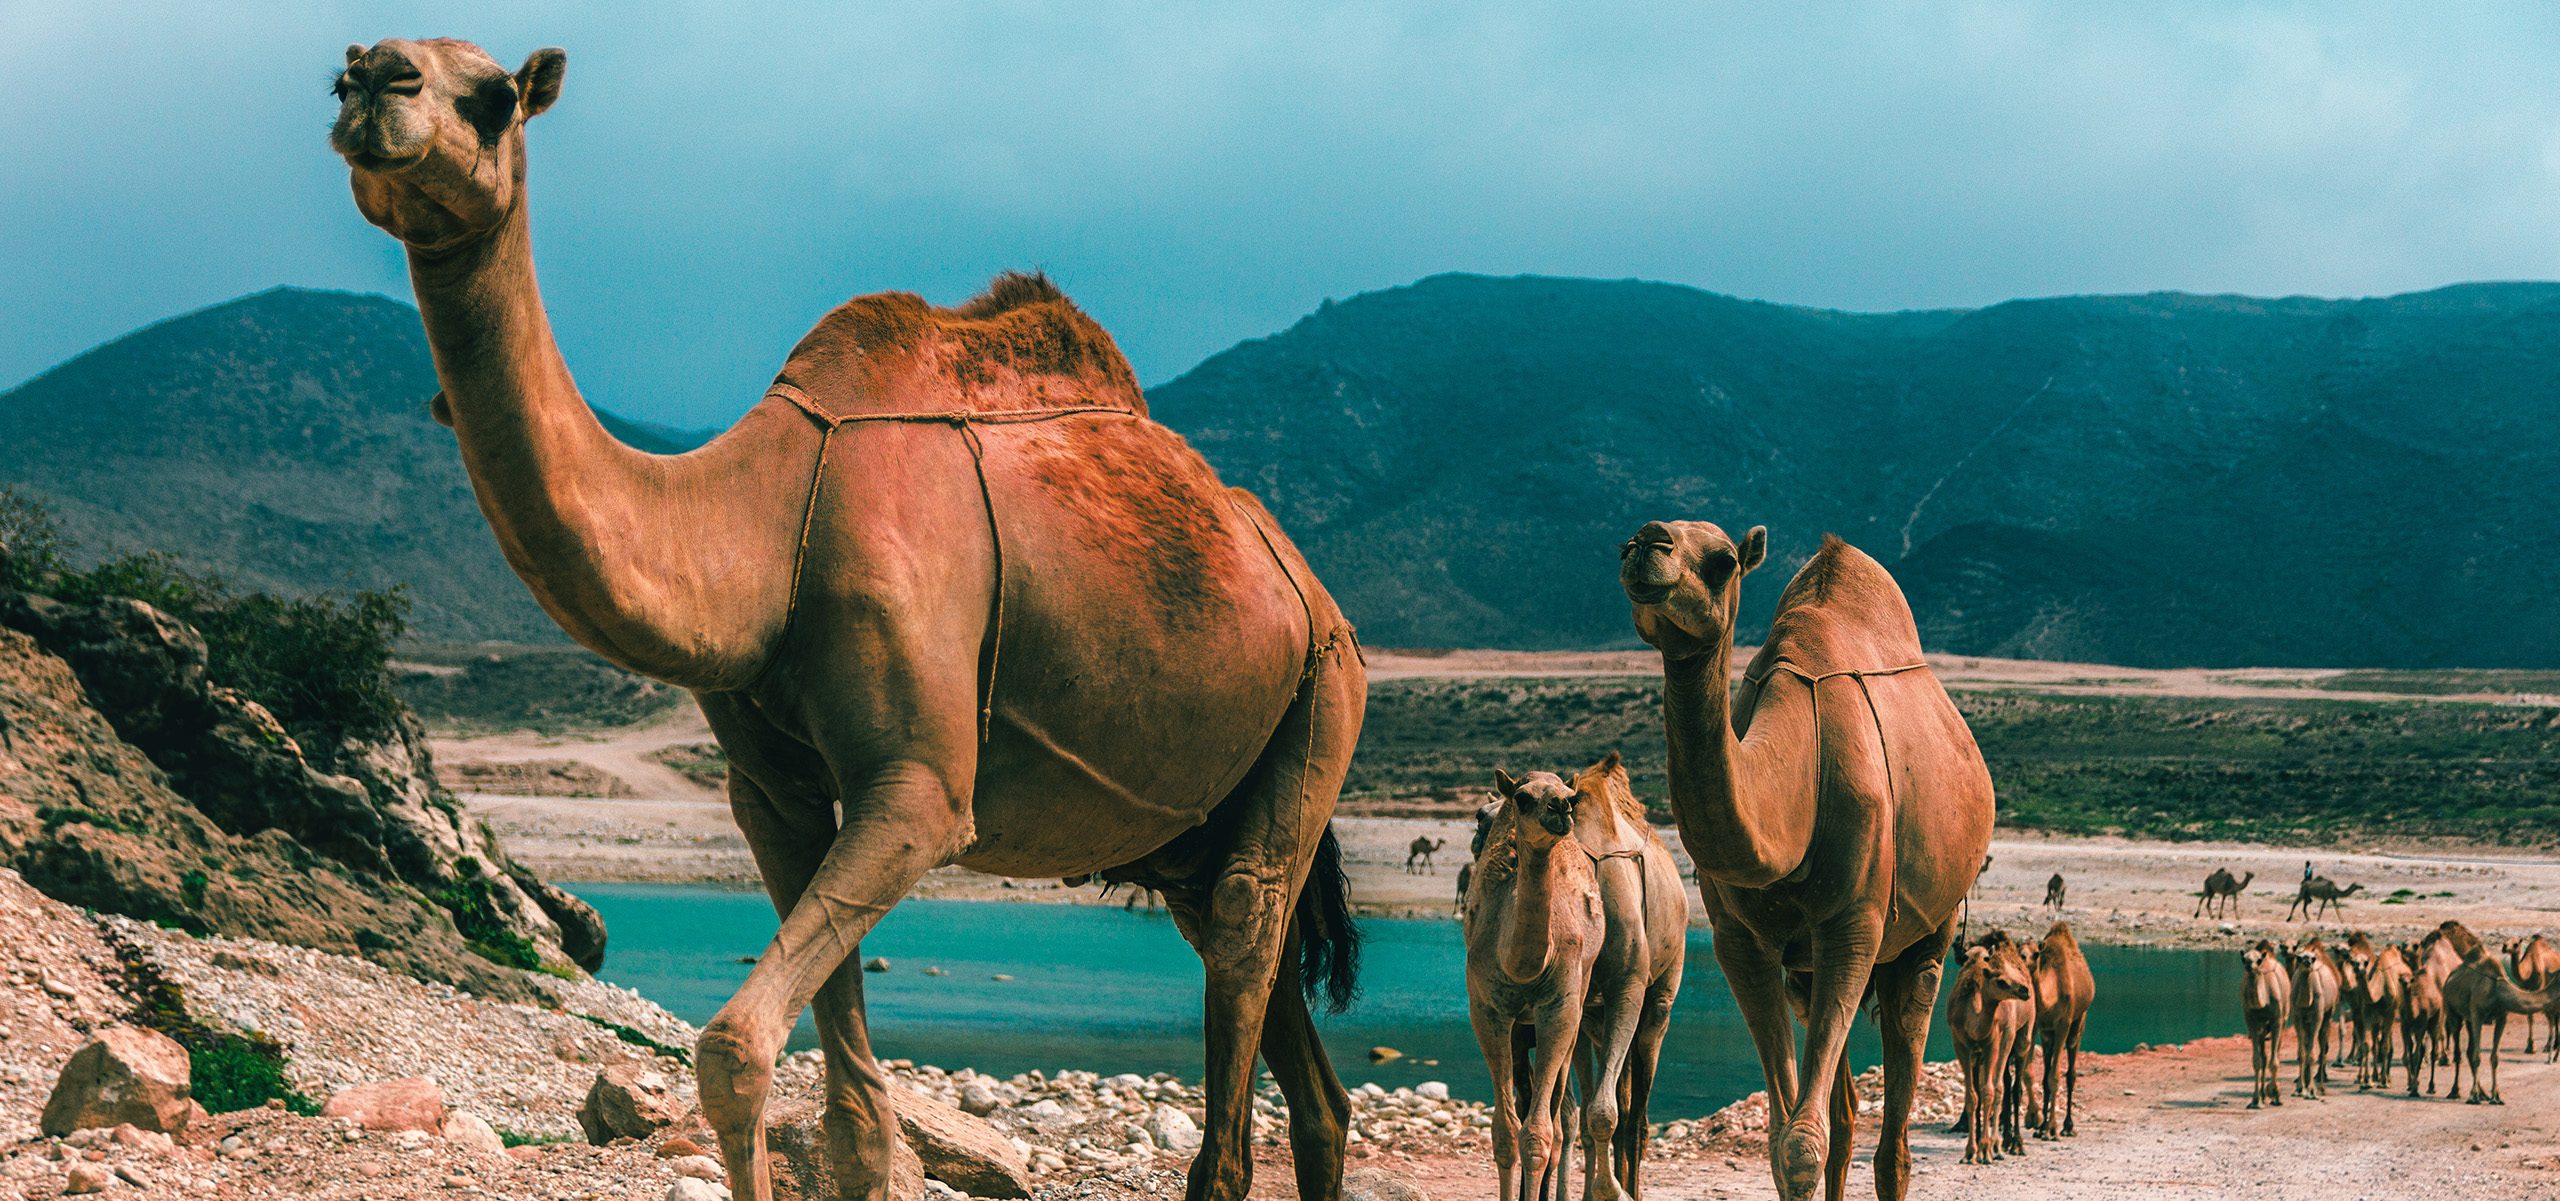 Oman-Dhofar-Salalah Camels